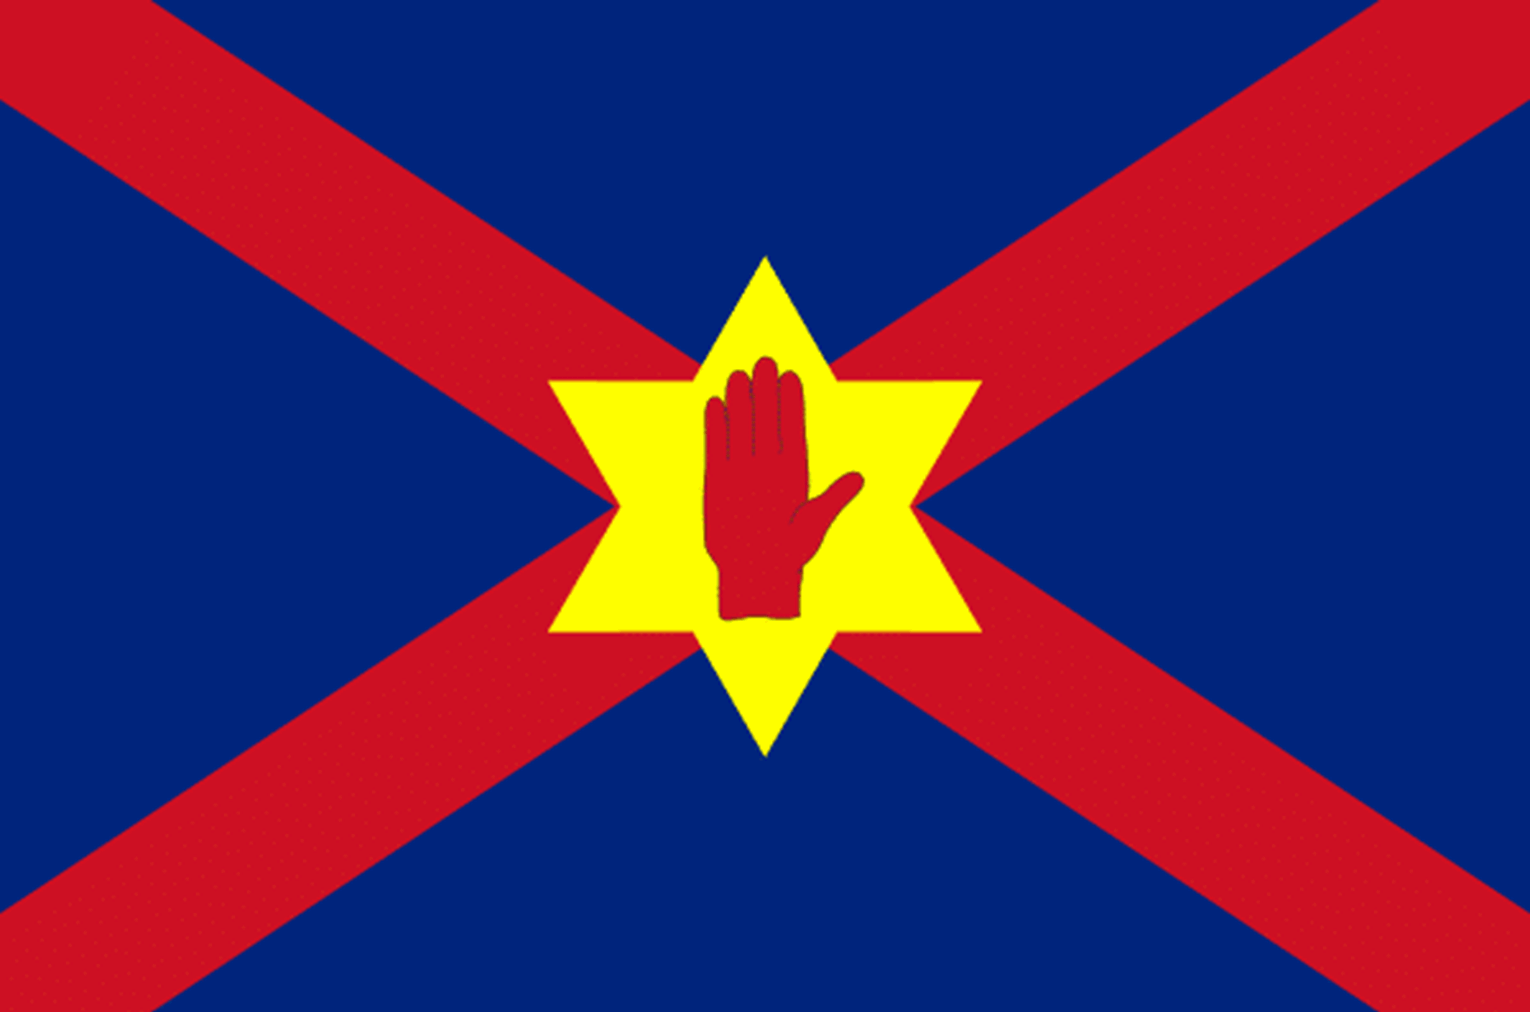 Hand of Ulster facts: Bạn muốn biết thêm về huy hiệu phương Bắc - Hand of Ulster? Hãy xem những hình ảnh liên quan đến từ khóa này để khám phá những điều thú vị và đặc biệt về huy hiệu này, một biểu tượng của vùng đất này.